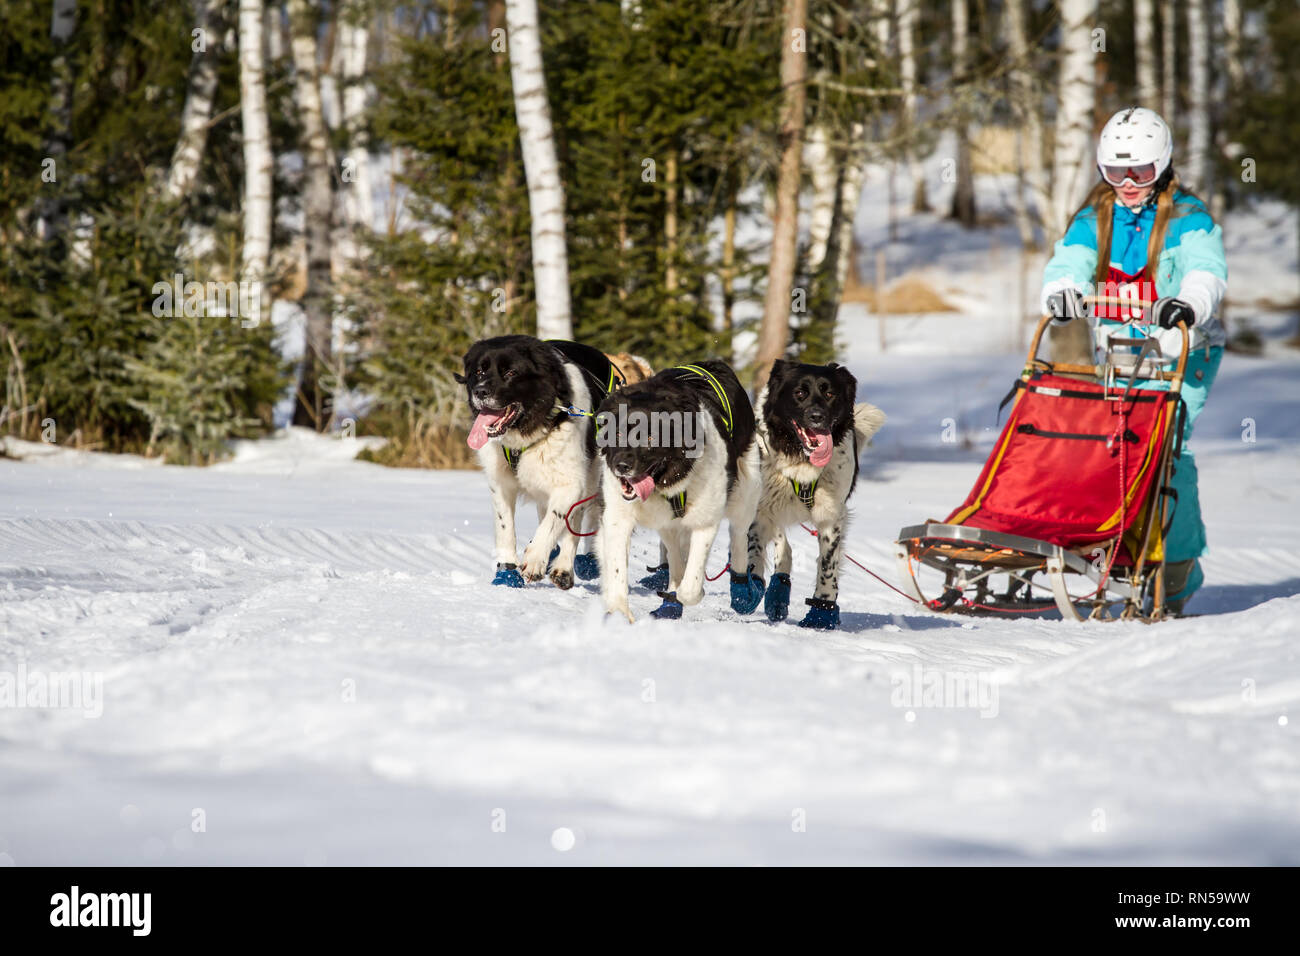 Český horský pes (Czech Mountain dog) @ sled dog race, Czech Republic Stock Photo